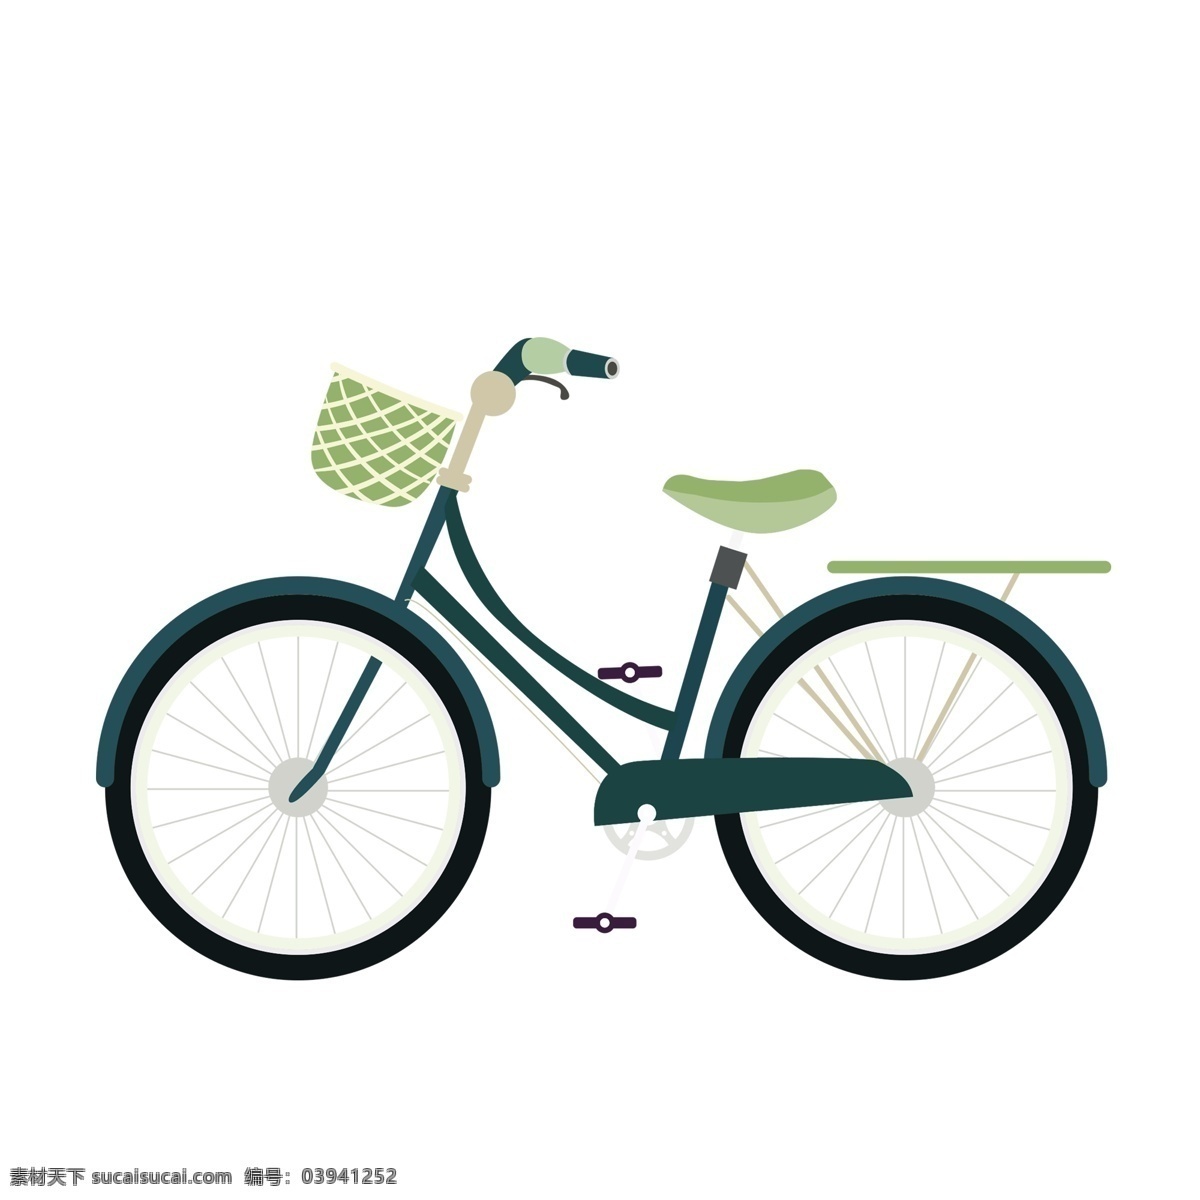 小 清新 辆 自行车 插画 商用 元素 小清新 卡通 简约 交通工具 手绘 psd设计 脚踏车